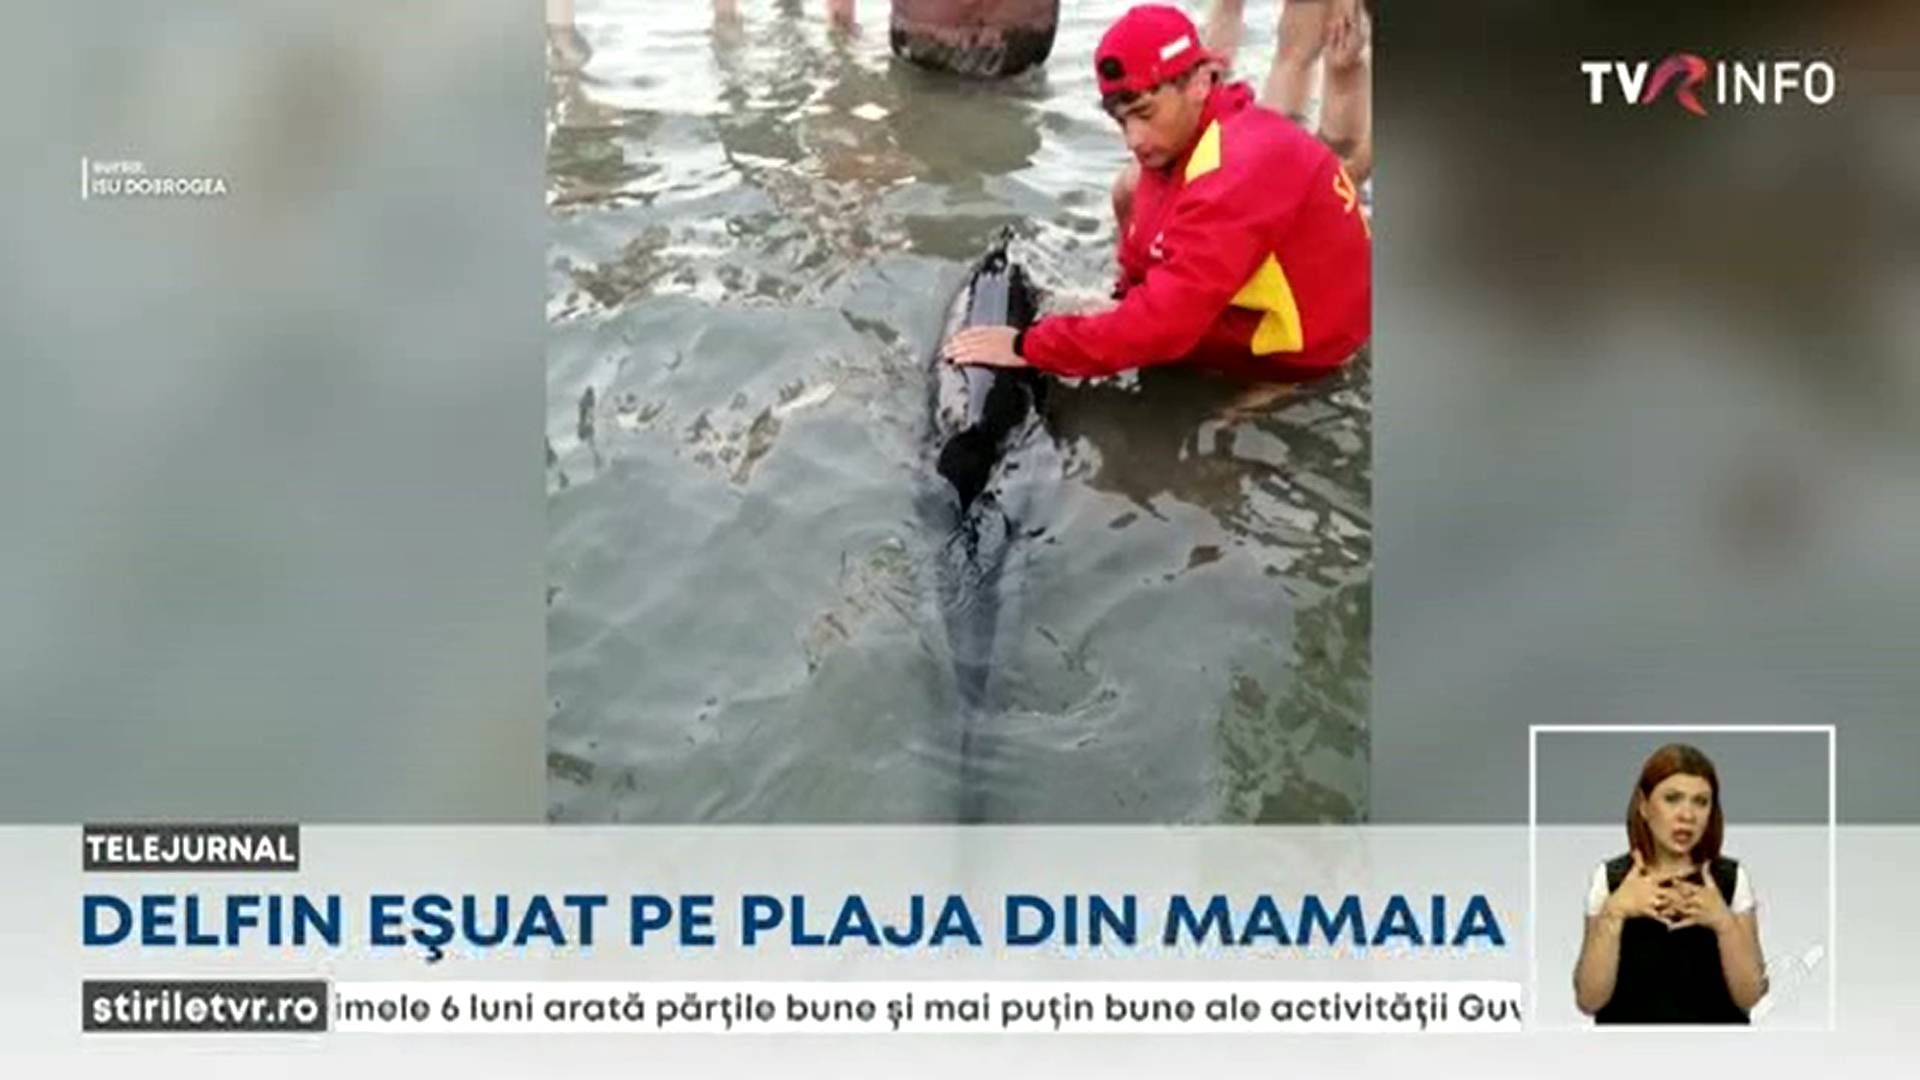 Salvarea unui pui de delfin eșuat pe plaja din Mamaia